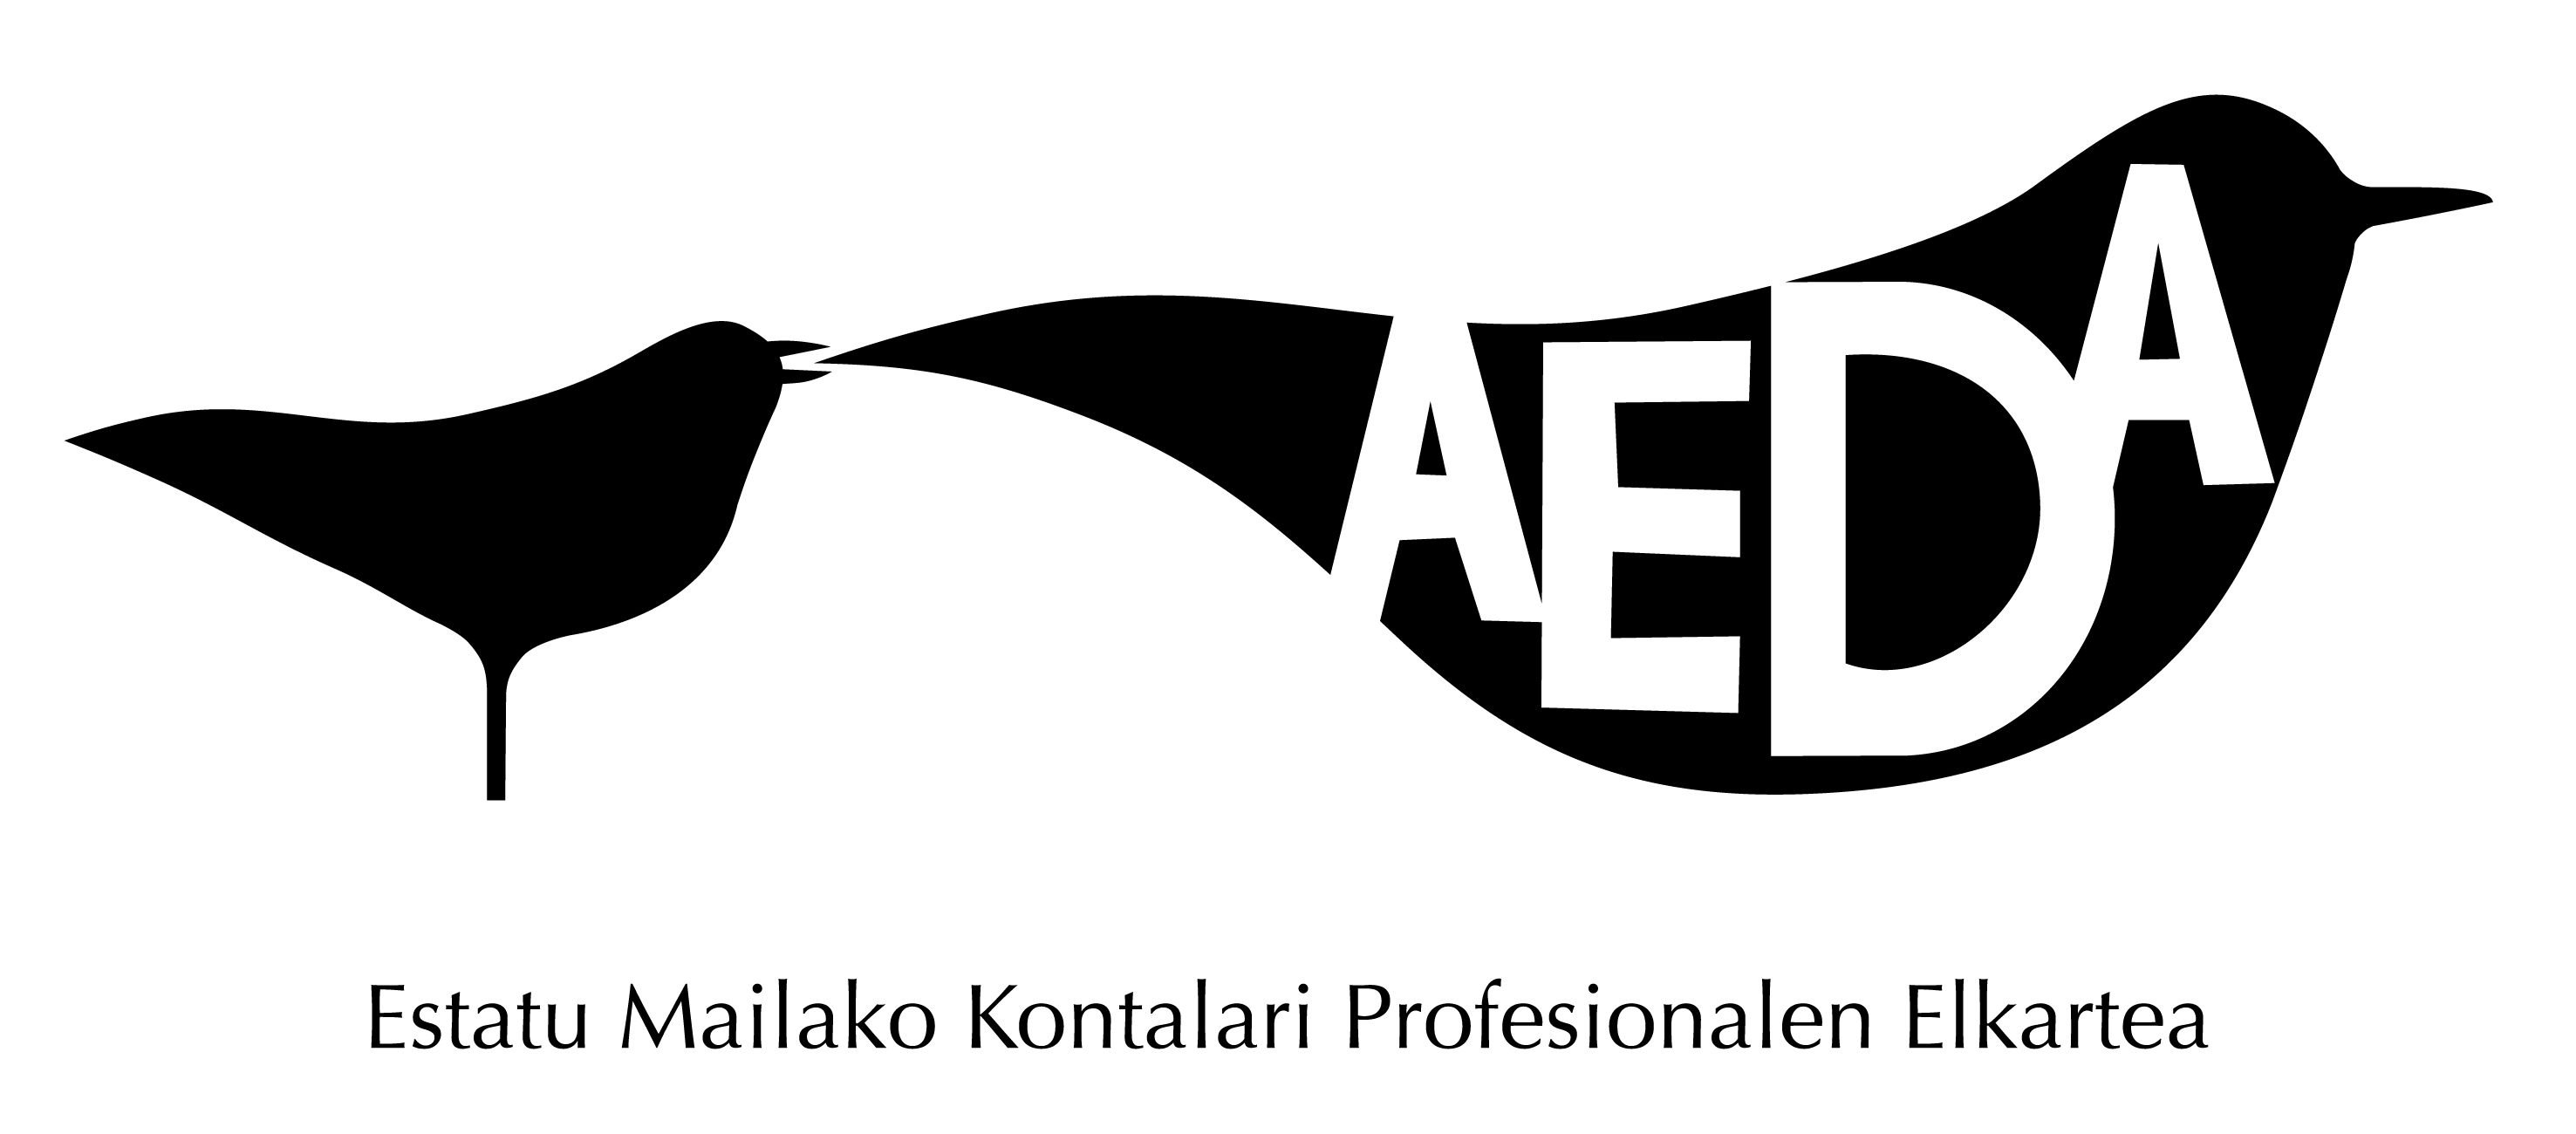 logo euskera